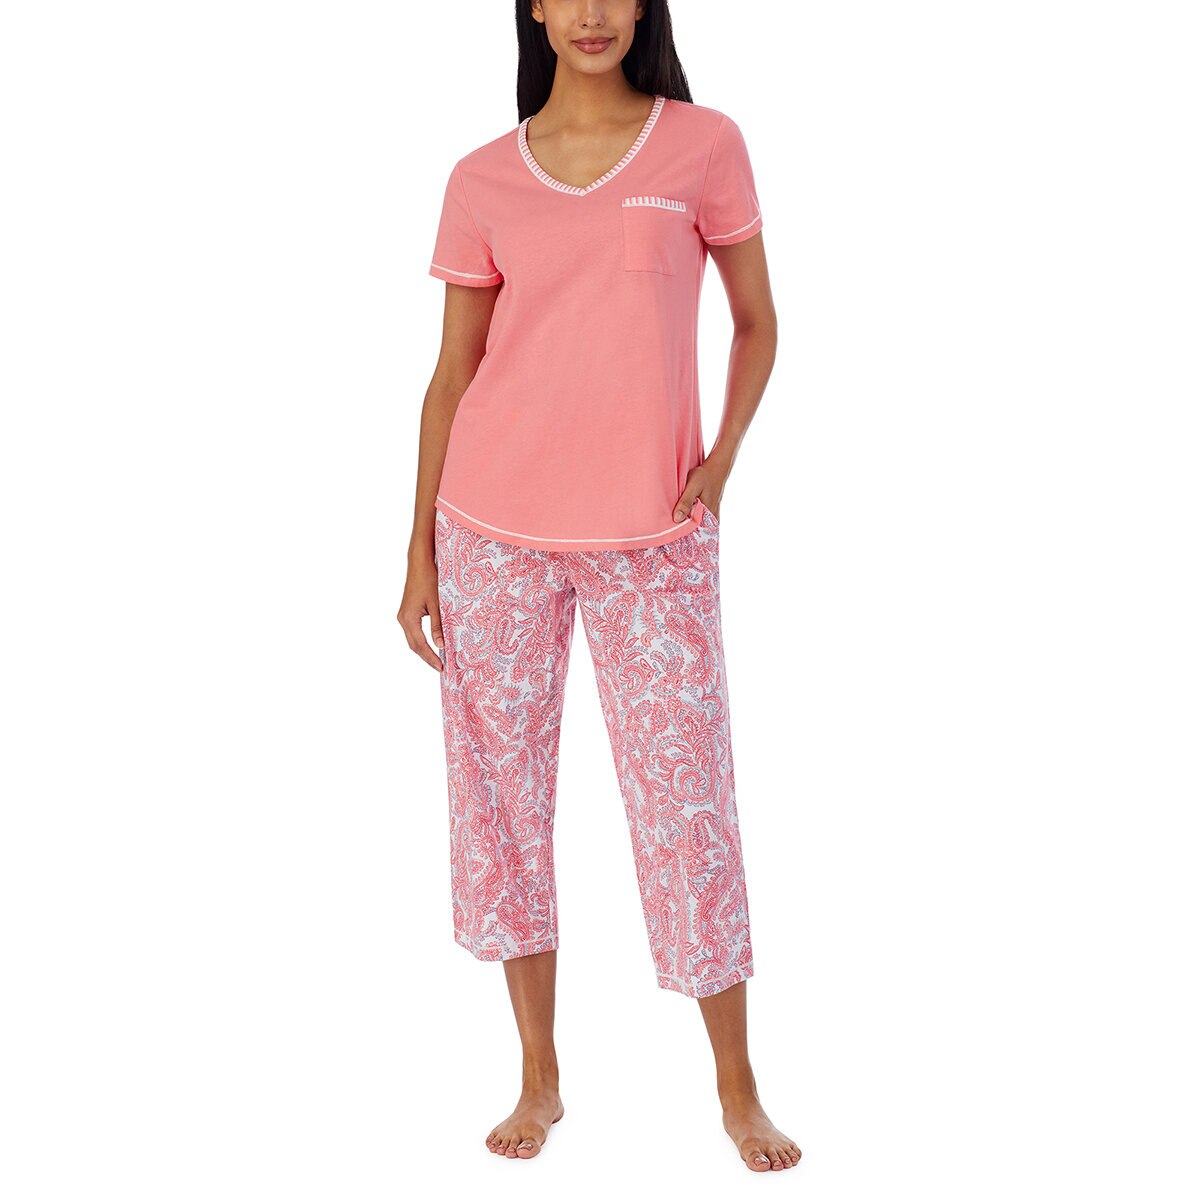 Carole Hochman Pijama para Dama 3 piezas Rosa